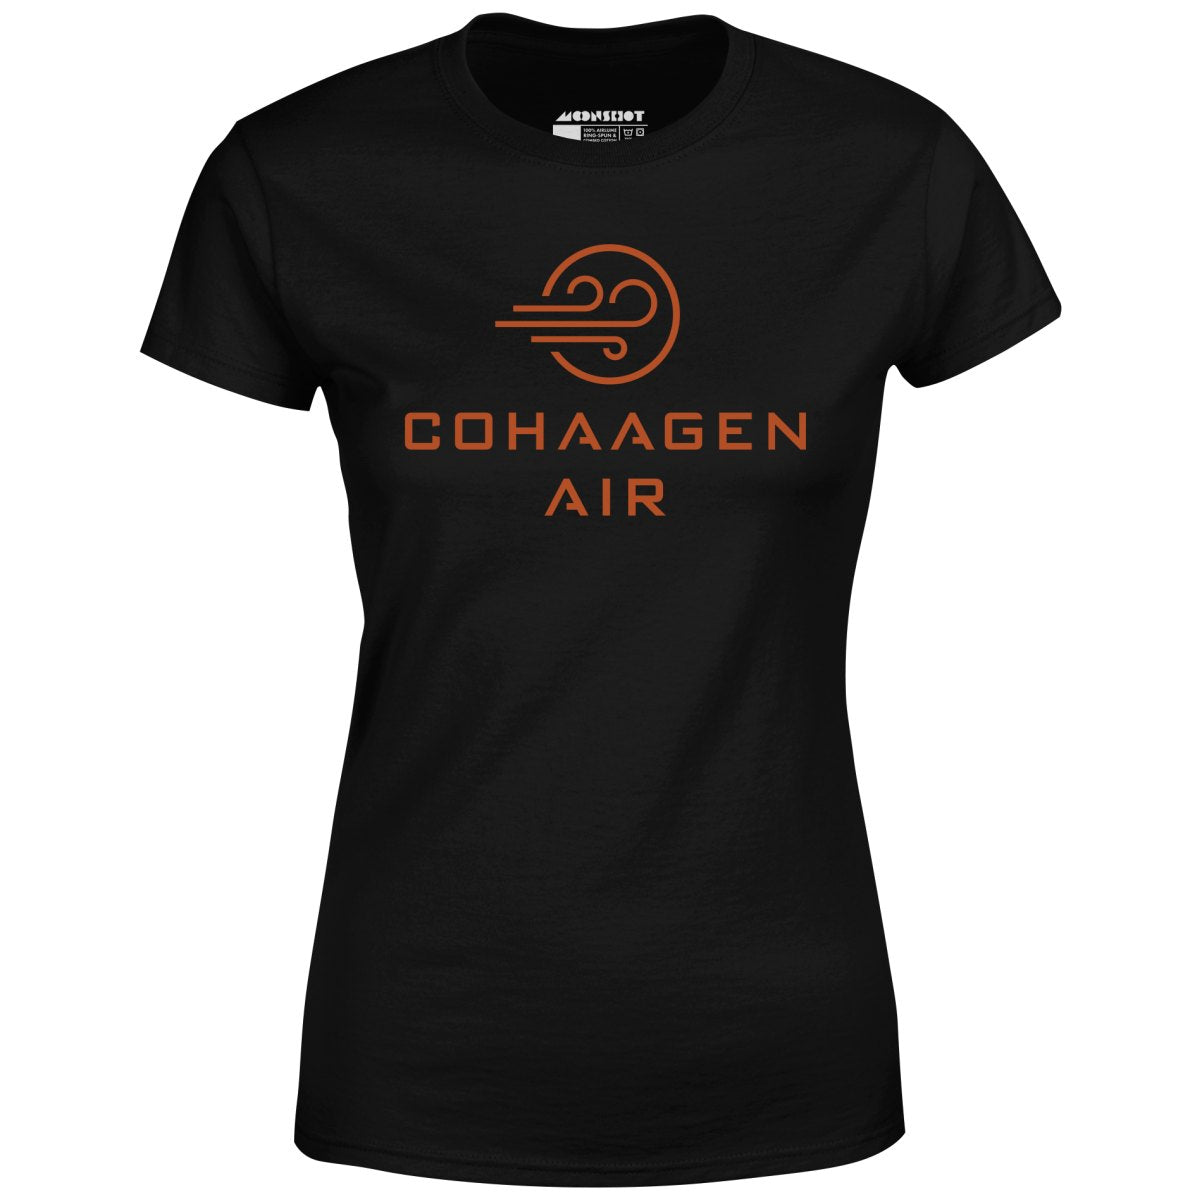 Cohaagen Air - Total Recall - Women's T-Shirt